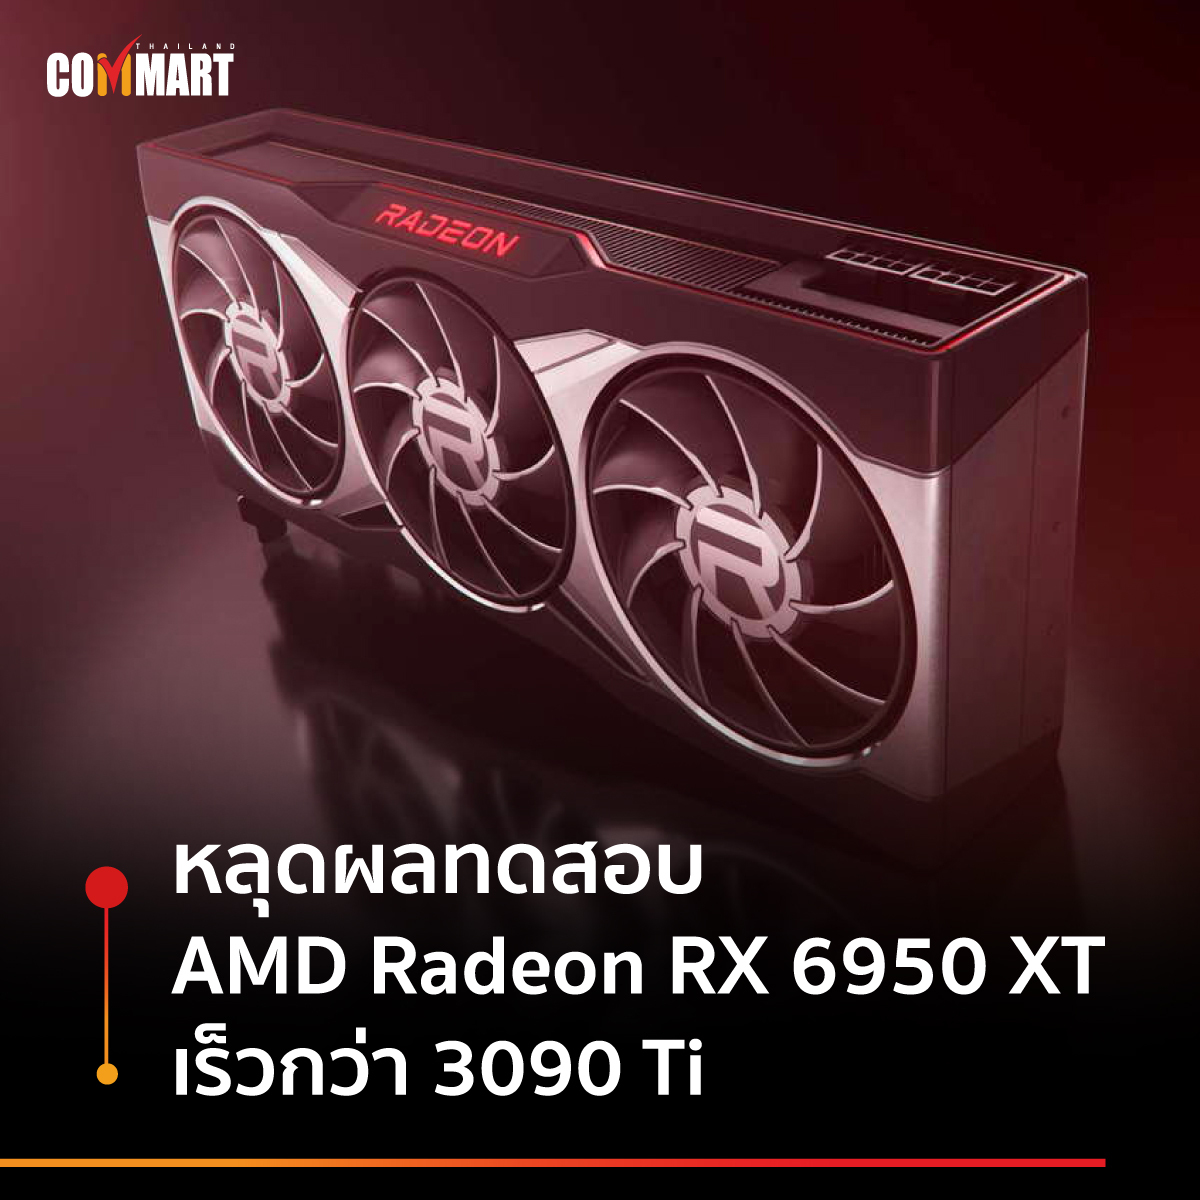 หลุดผลทดสอบ AMD Radeon RX 6950 XT เร็วกว่า 3090 Ti